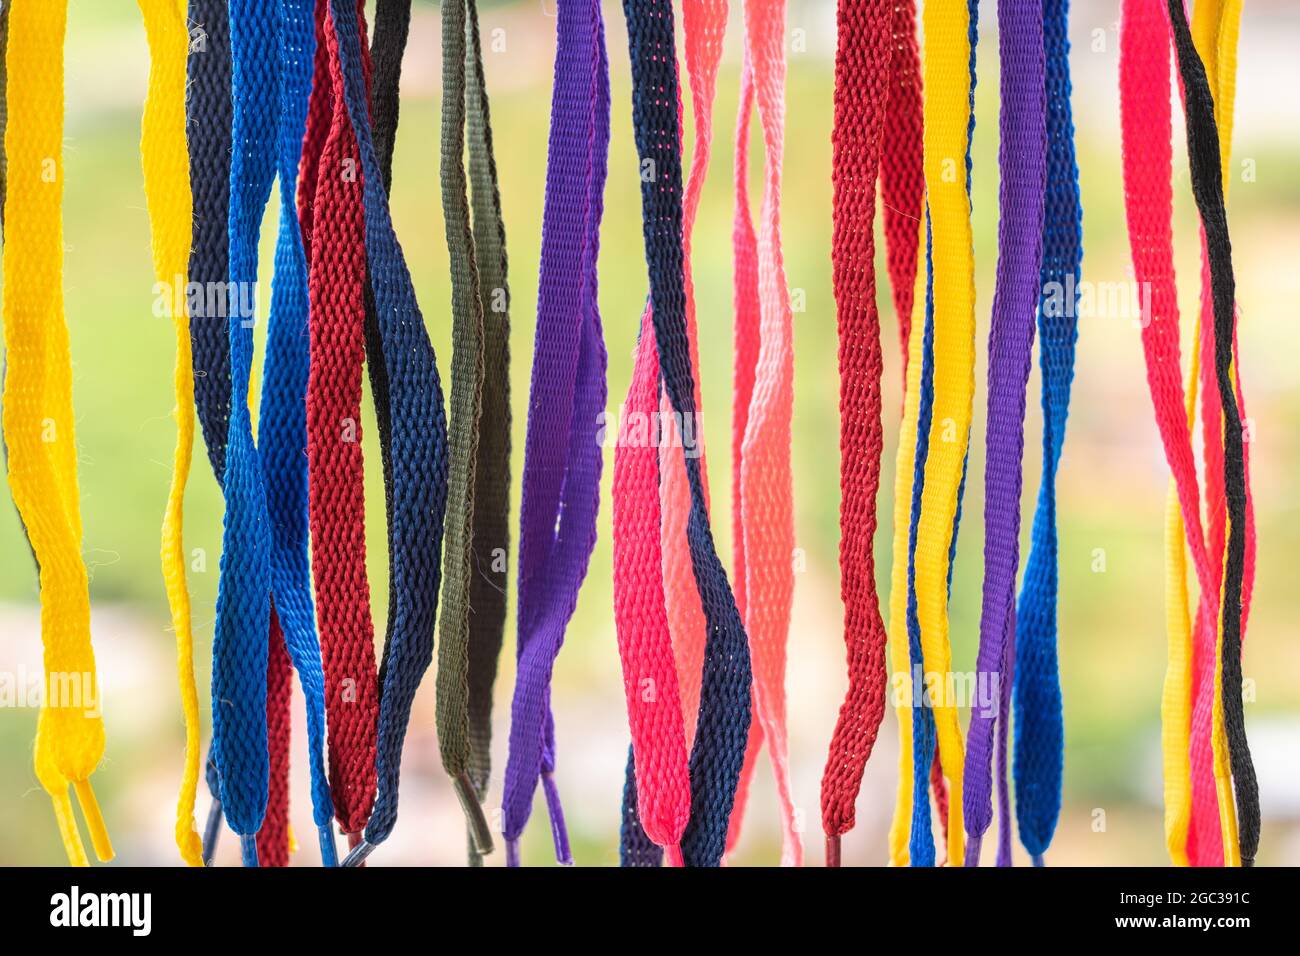 de nombreux lacets colorés, suspendus sur un fond dense de jungle, ont pointé vers le bas Banque D'Images